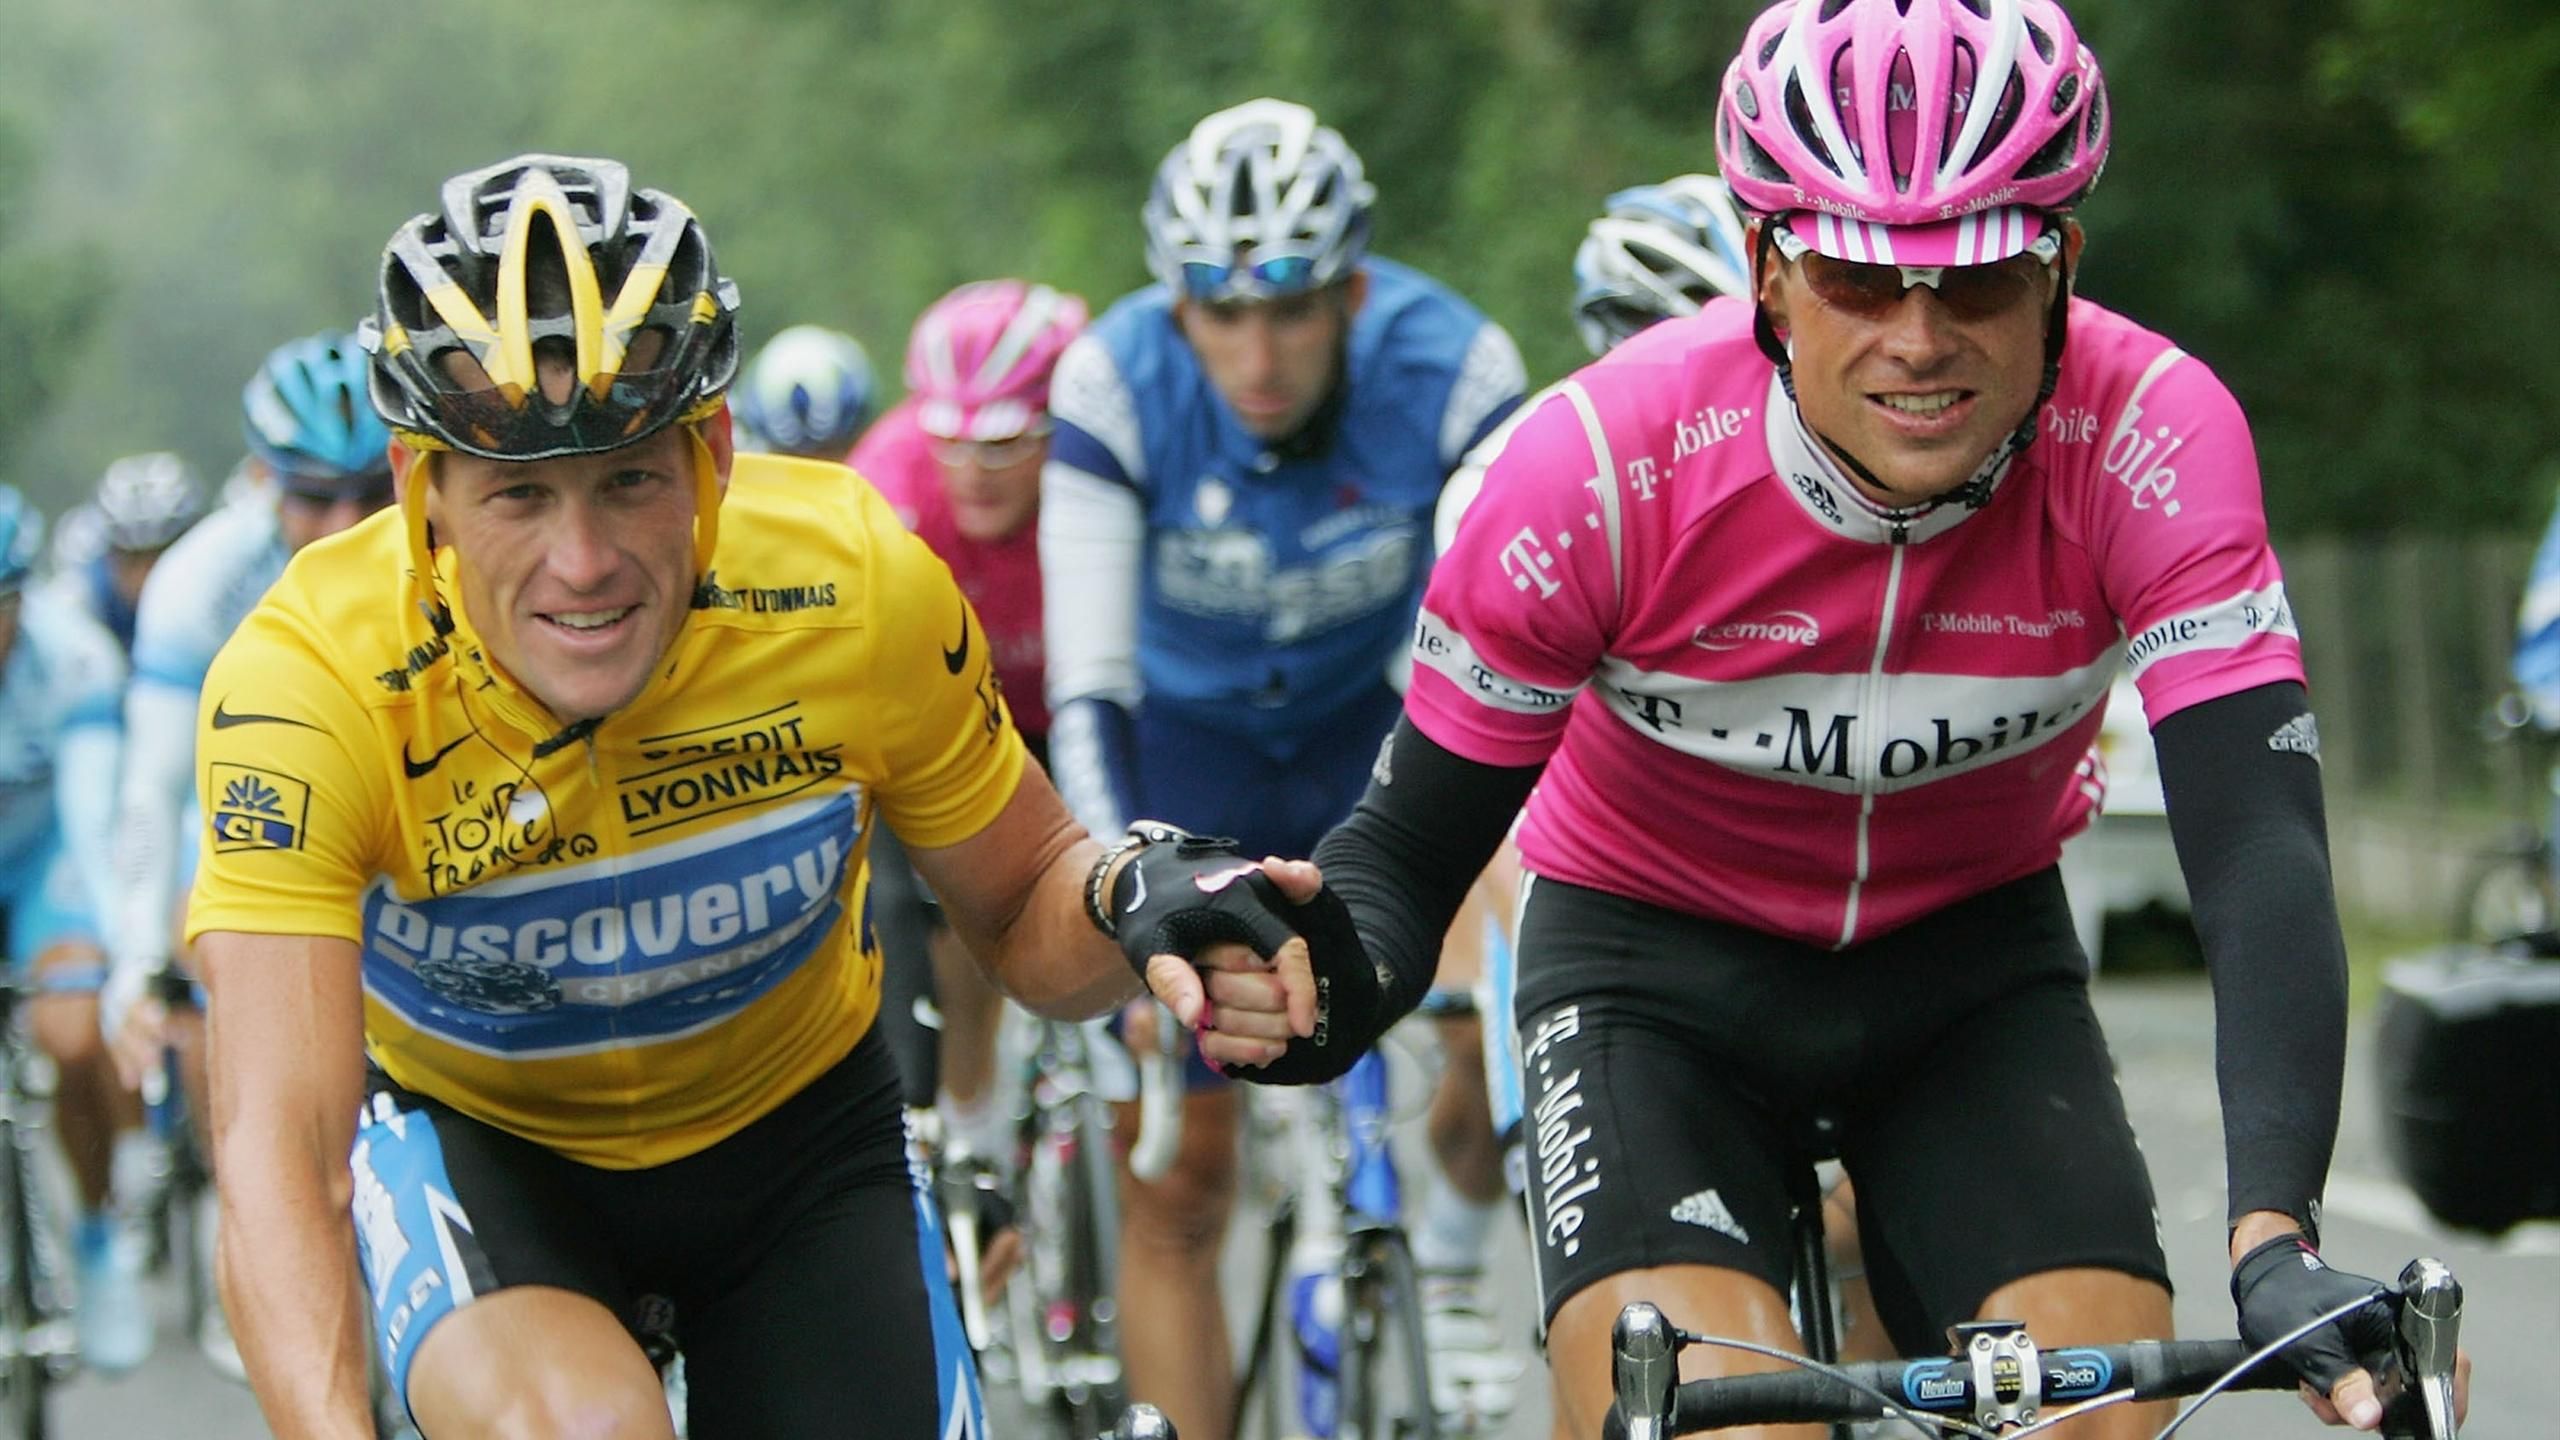 Armstrong revienta el Tour: sorprendentes declaraciones sobre dopaje su - Eurosport